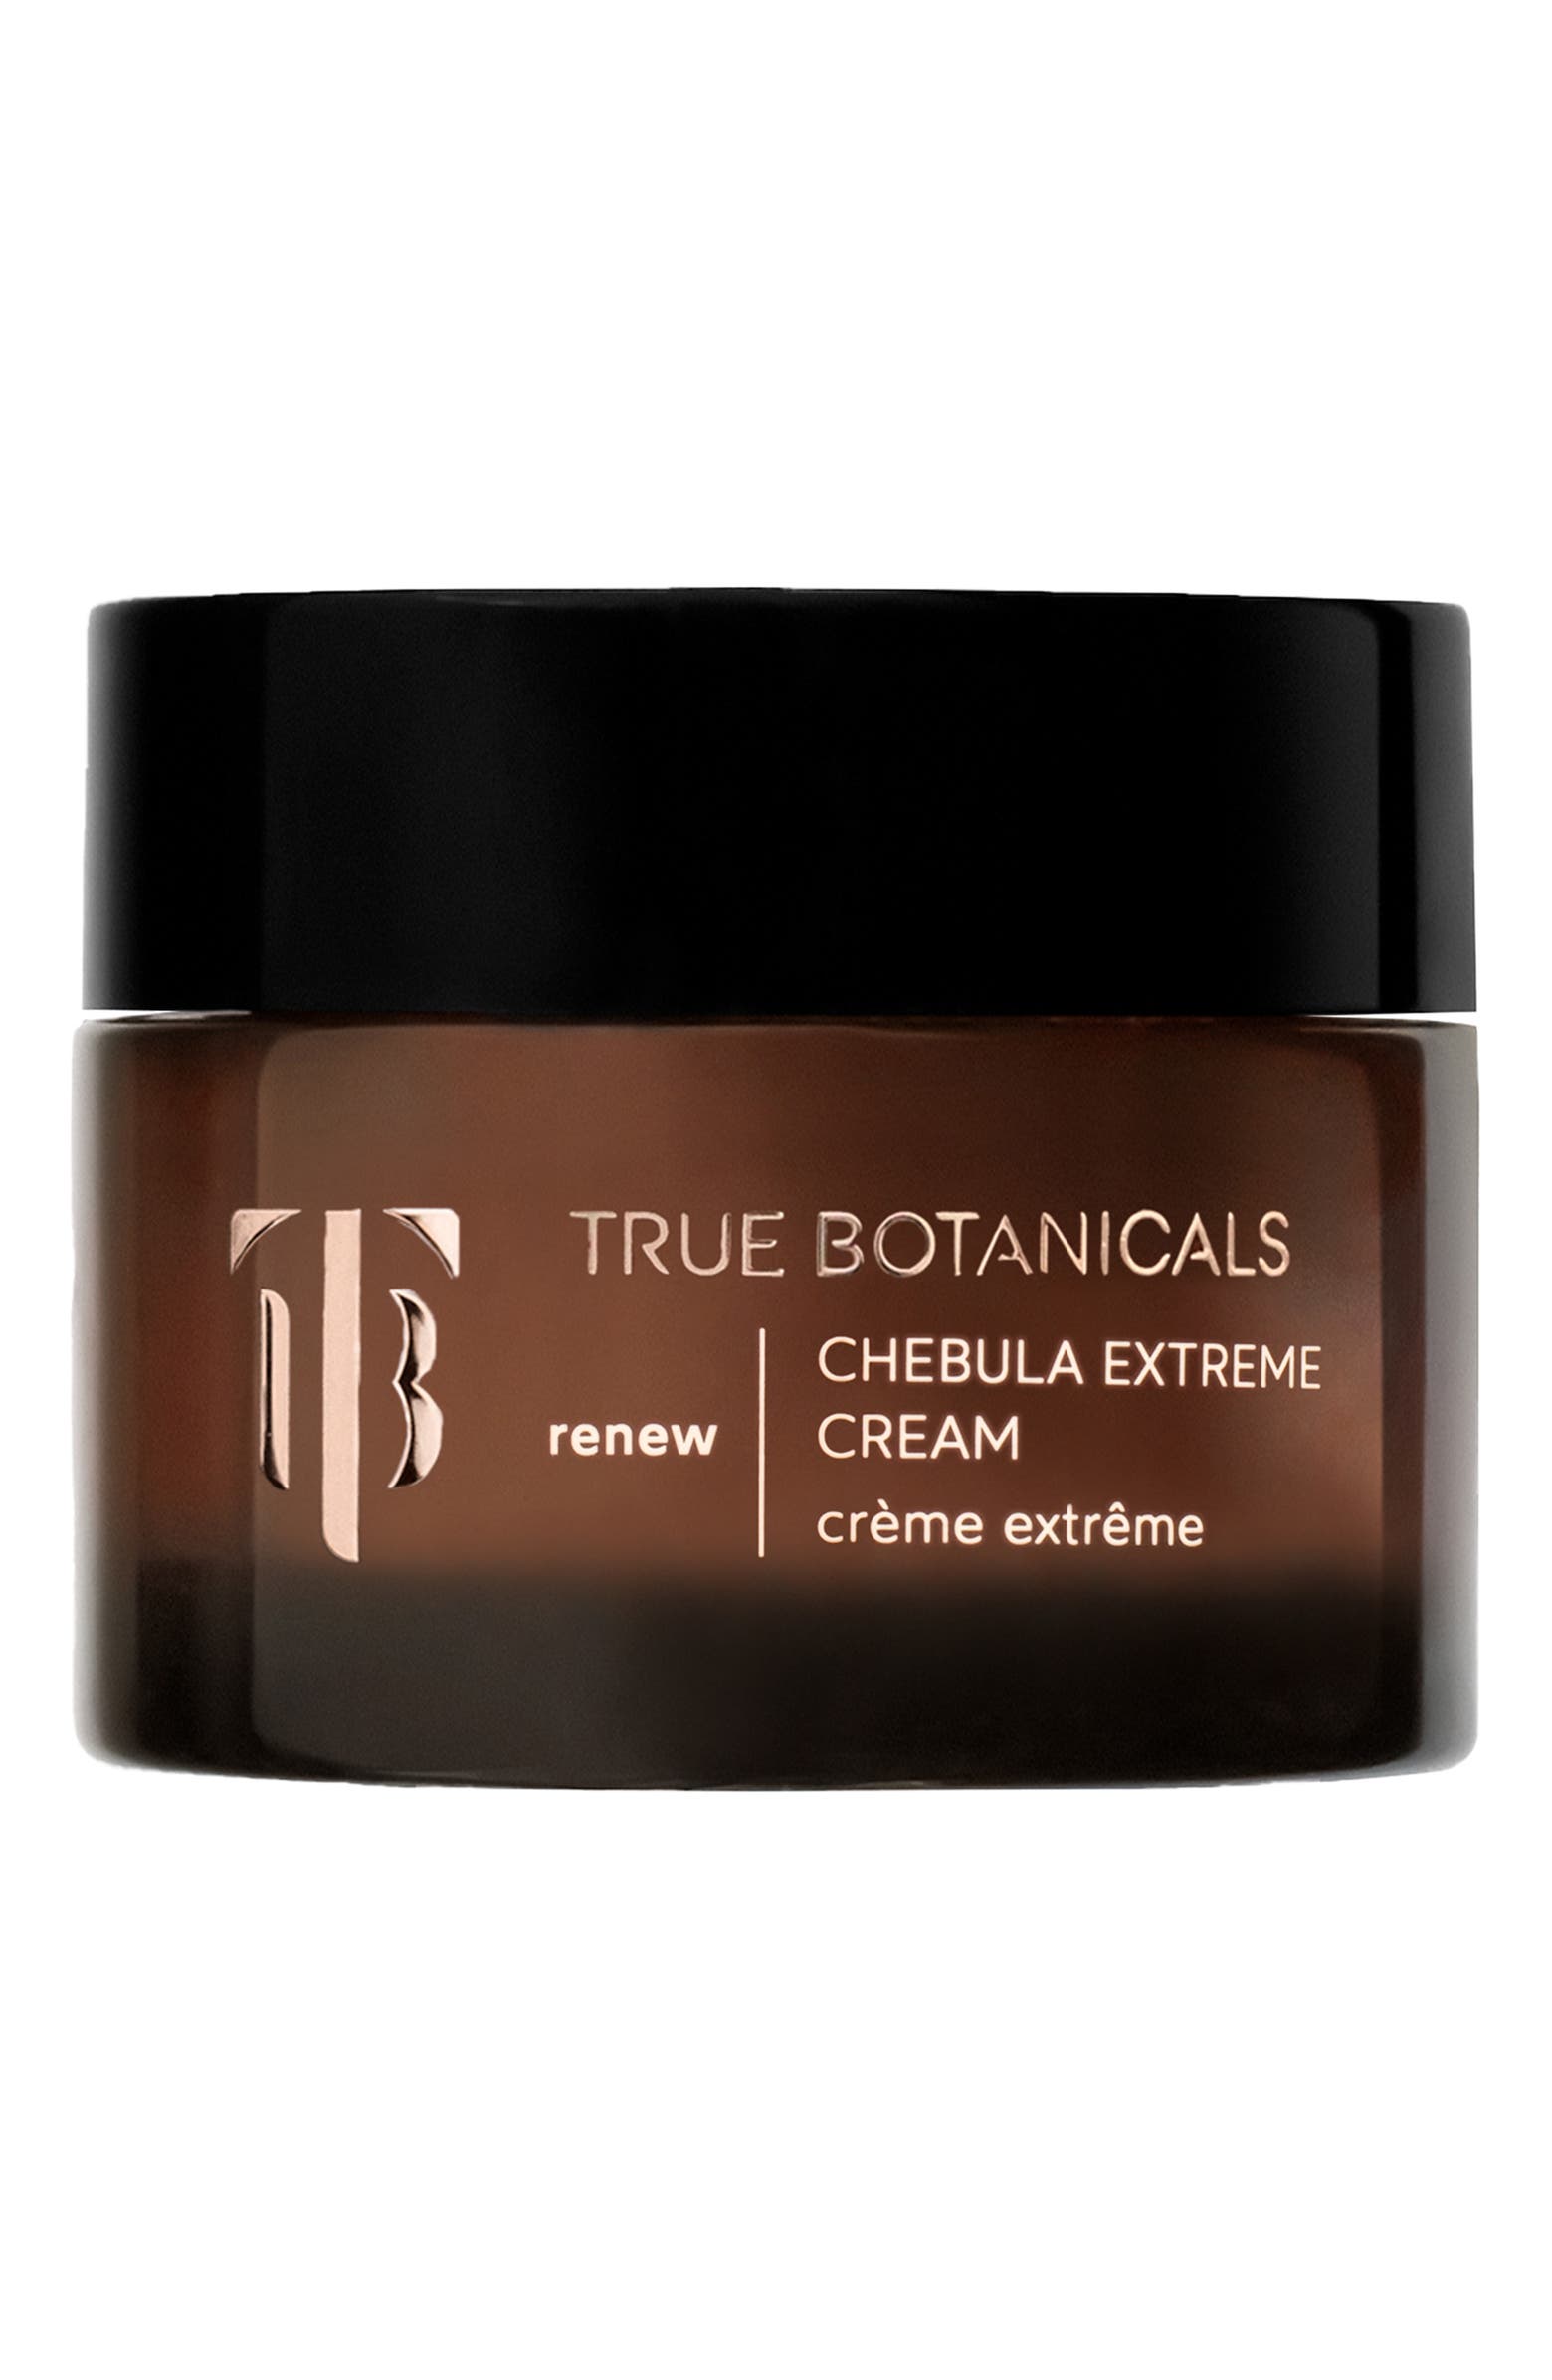 Image of Chebula Extreme Cream